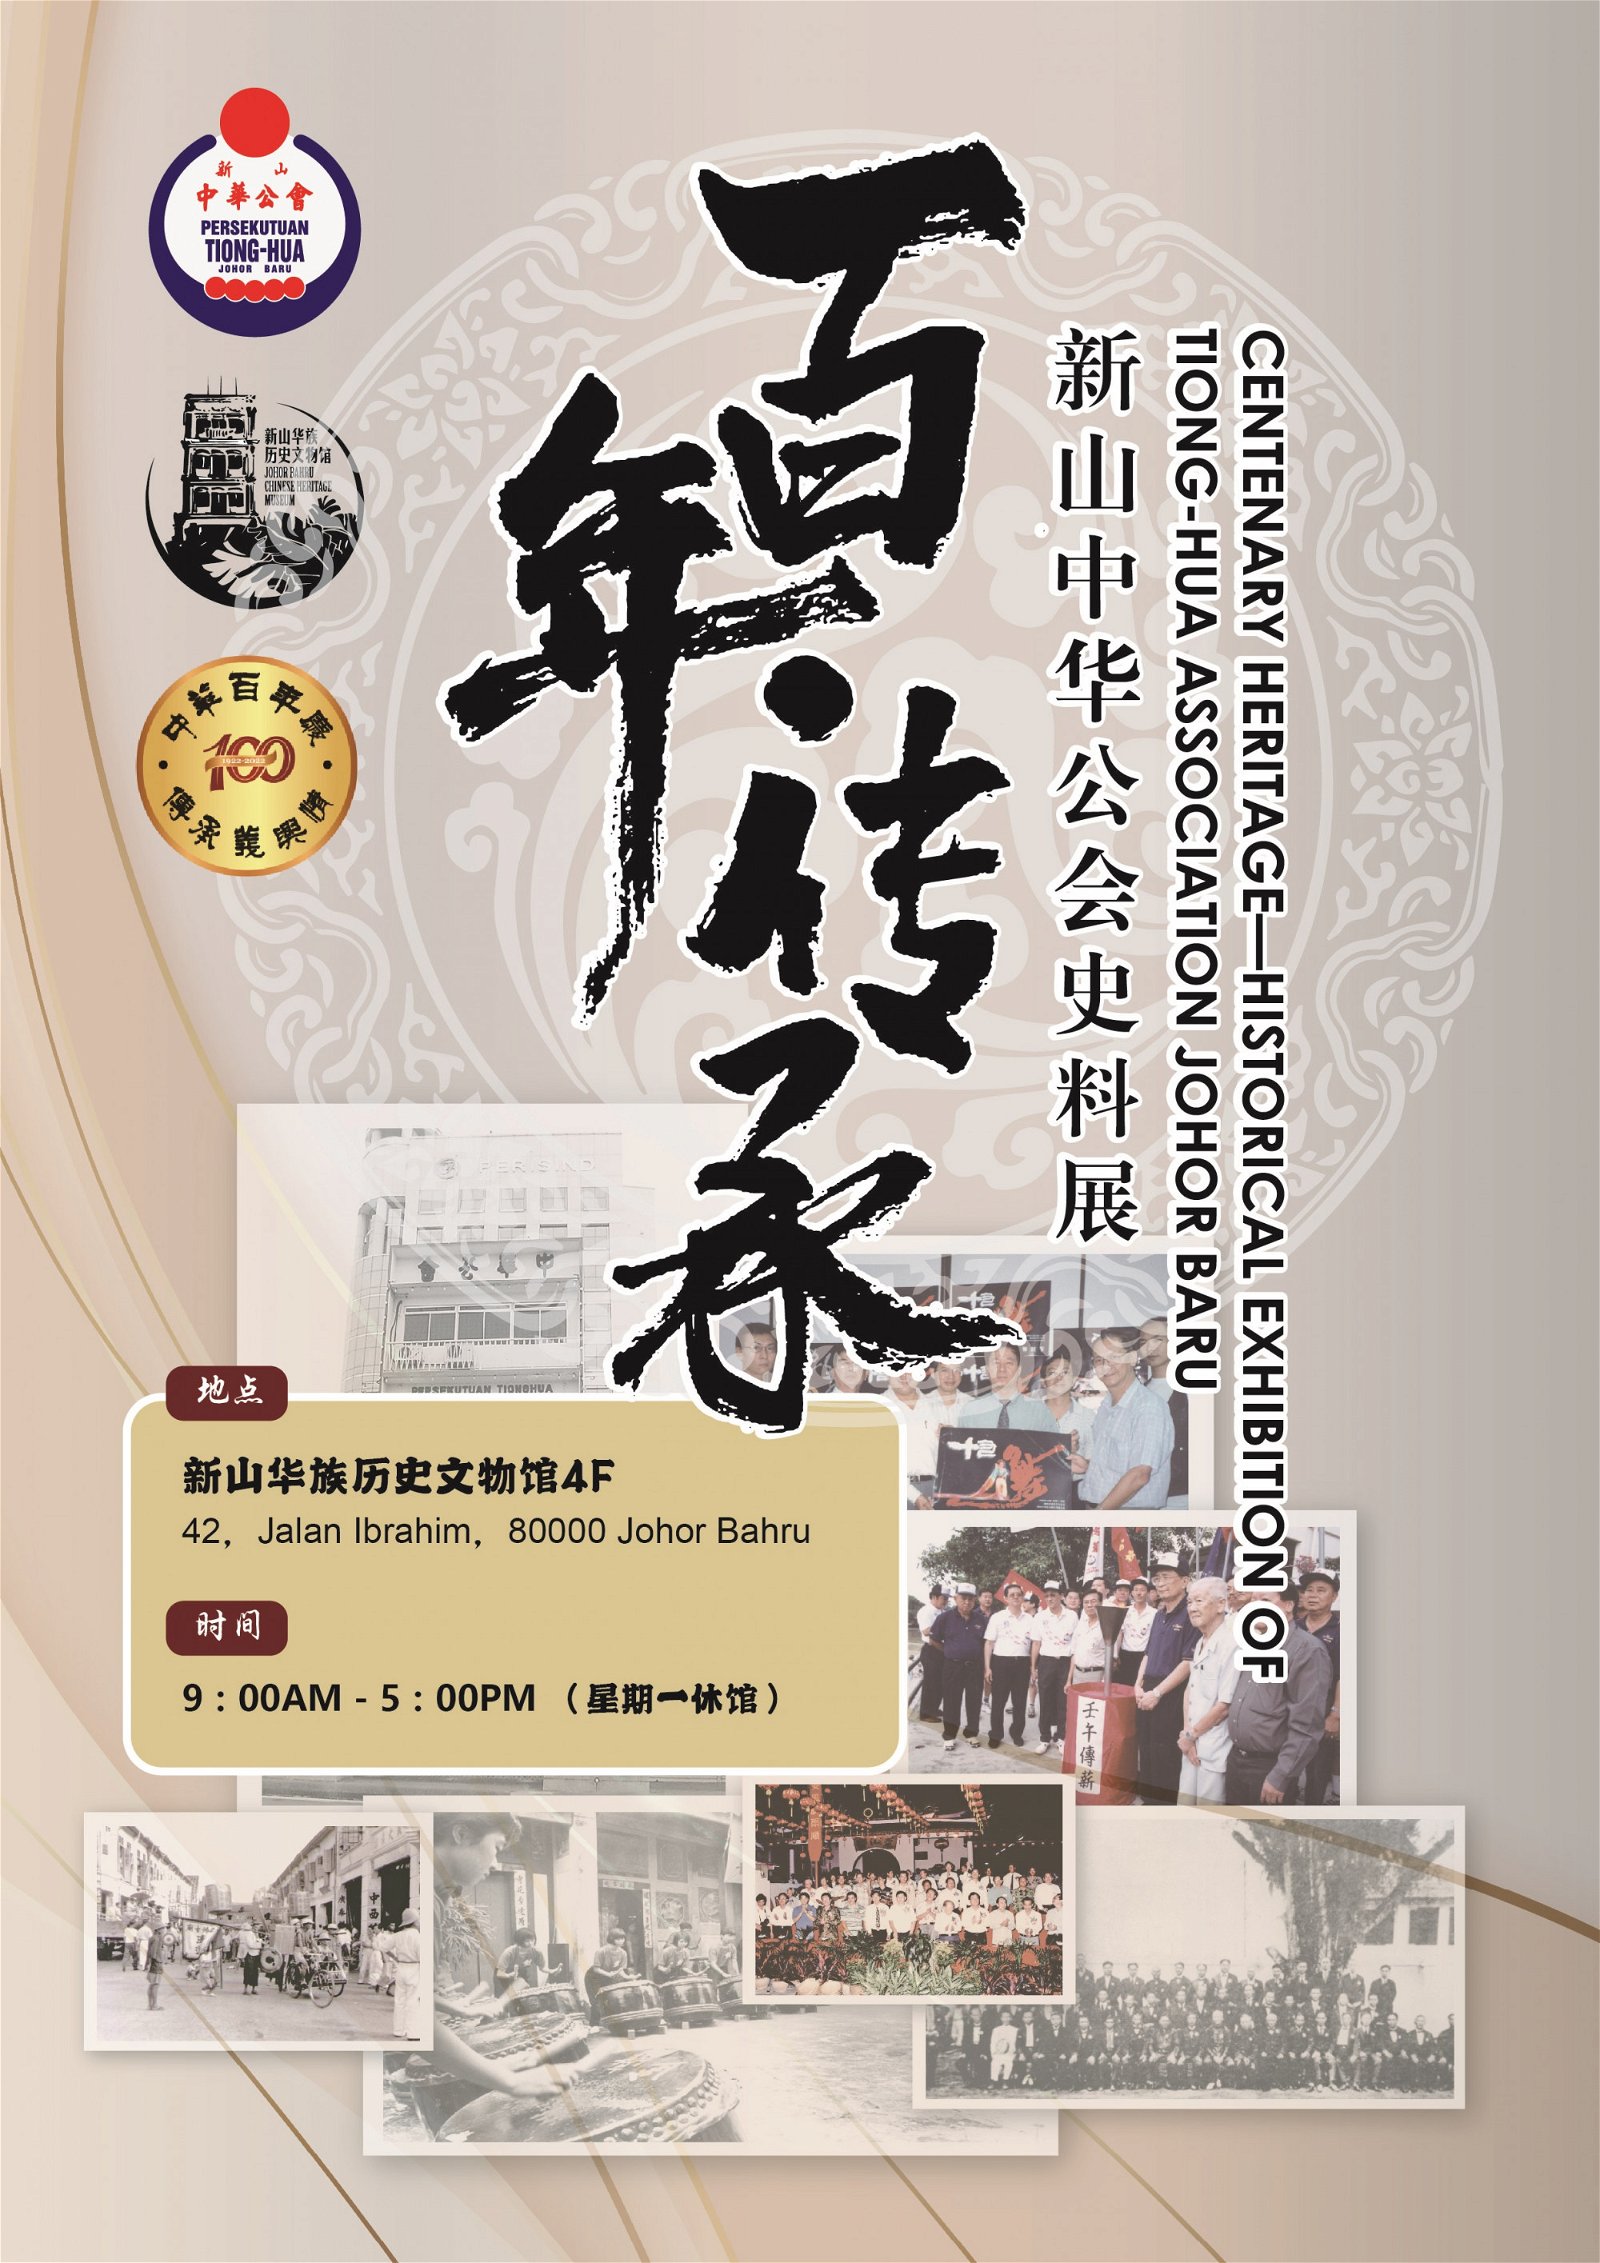 新山华族历史文物馆将于10月16日举行《百年.传承 新山中华公会史料展》开幕仪式。